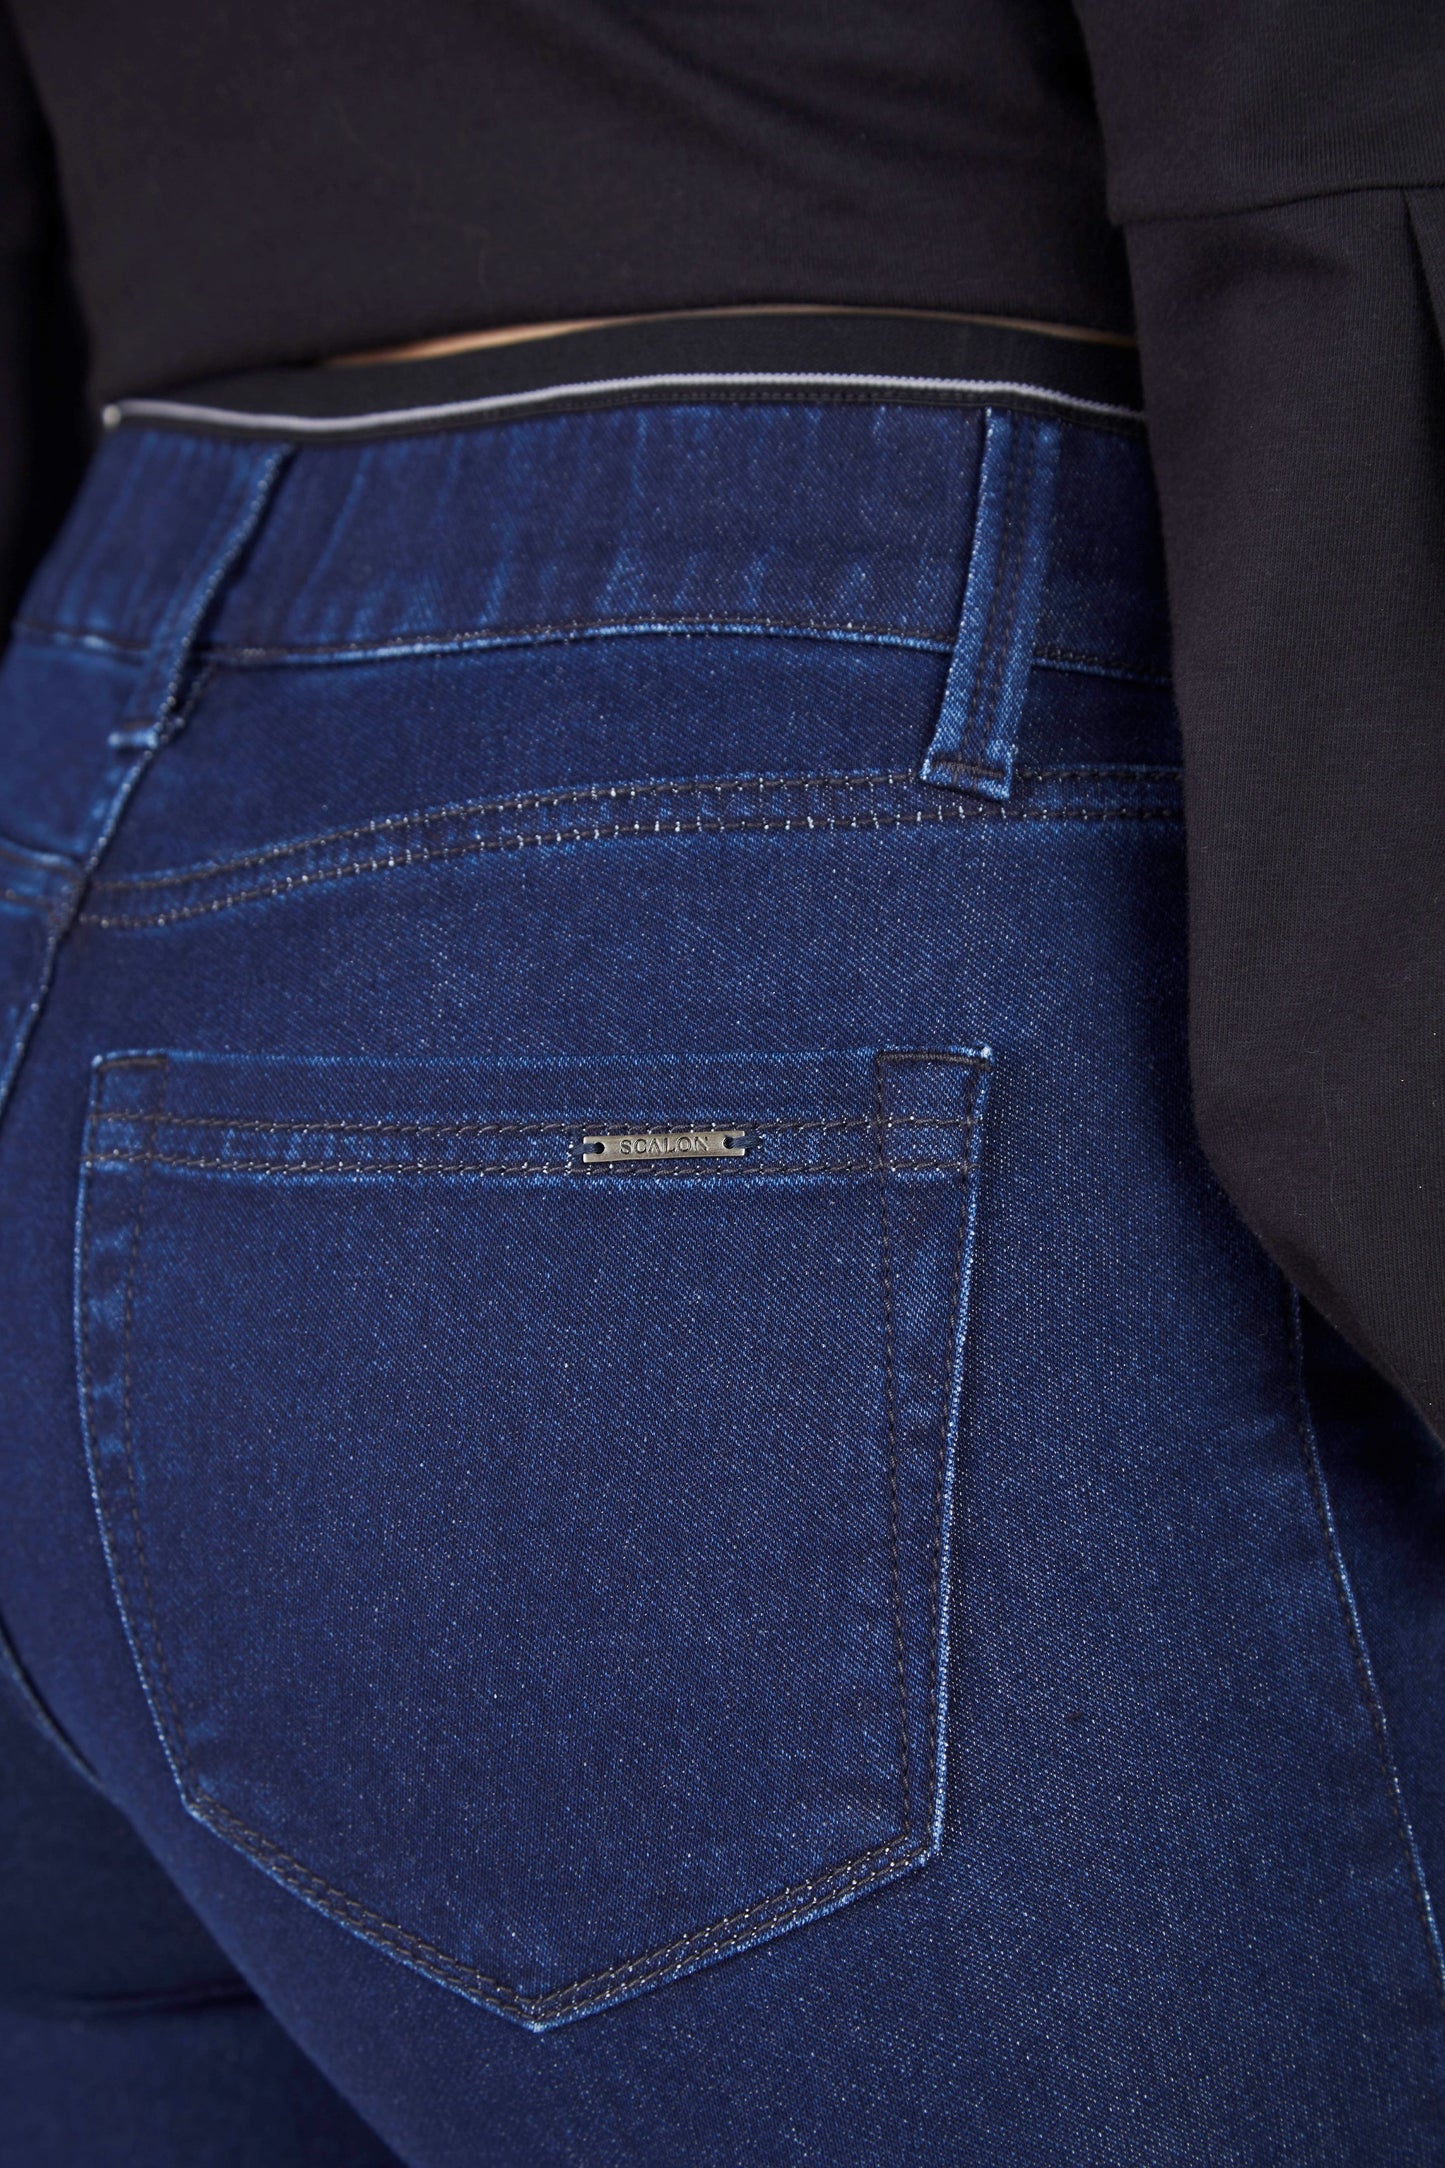 calça jeans malha skinny cintura intermediária com elástico interno